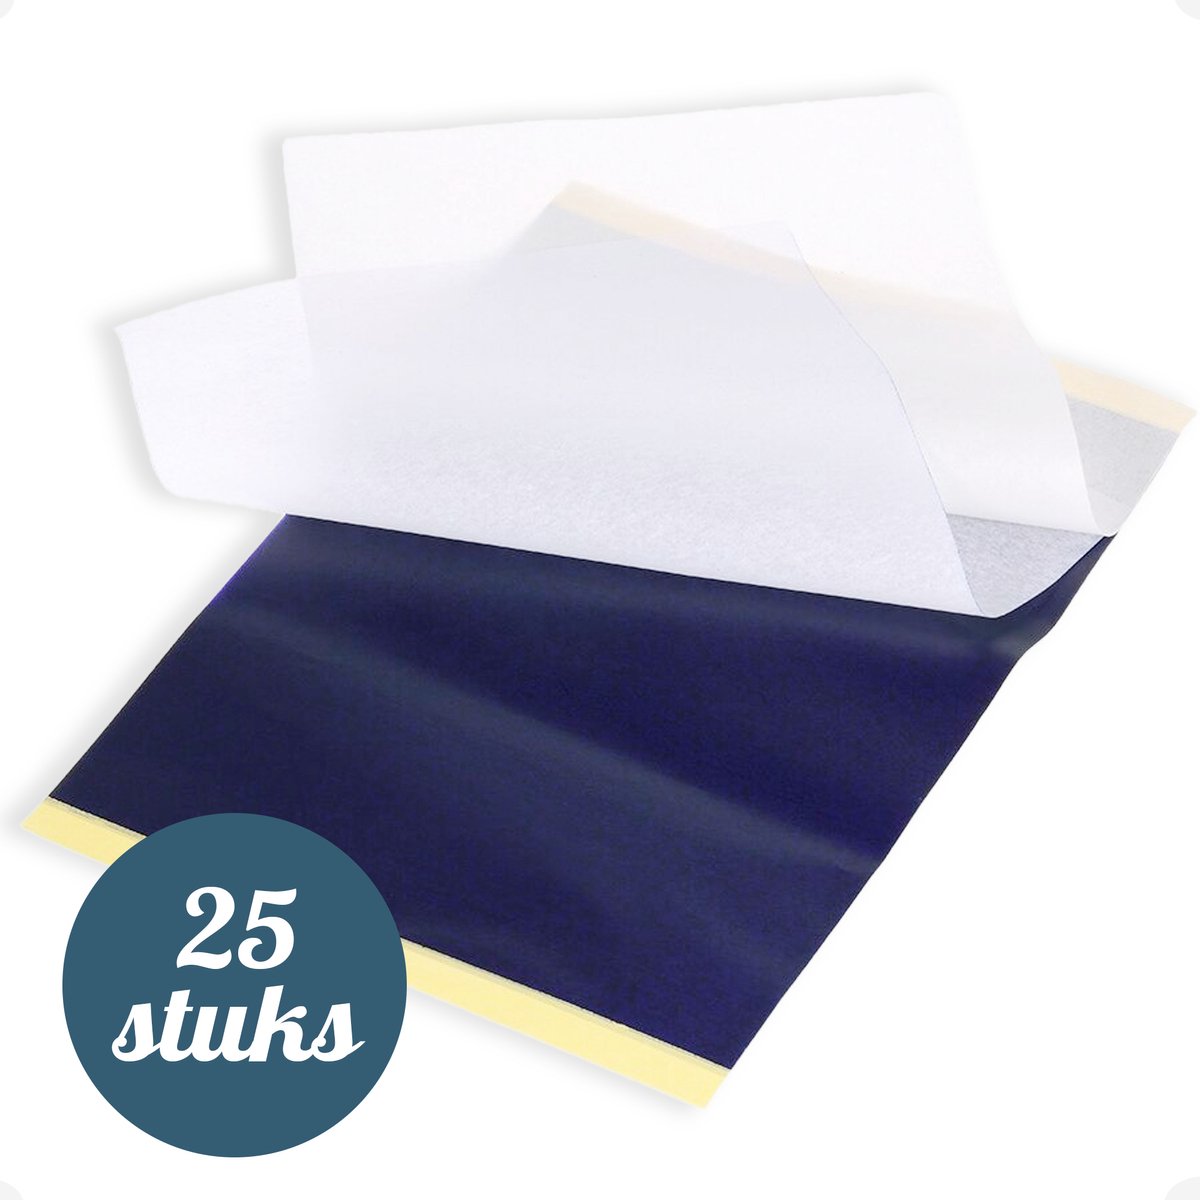 Trizzle 25 Stuks Transferpapier – Tattoo Papier Transferpaper – Carbon Stencil papier – Grafiet A4 Overtrekpapier voor Hobby – Carbonpapier - Trizzle